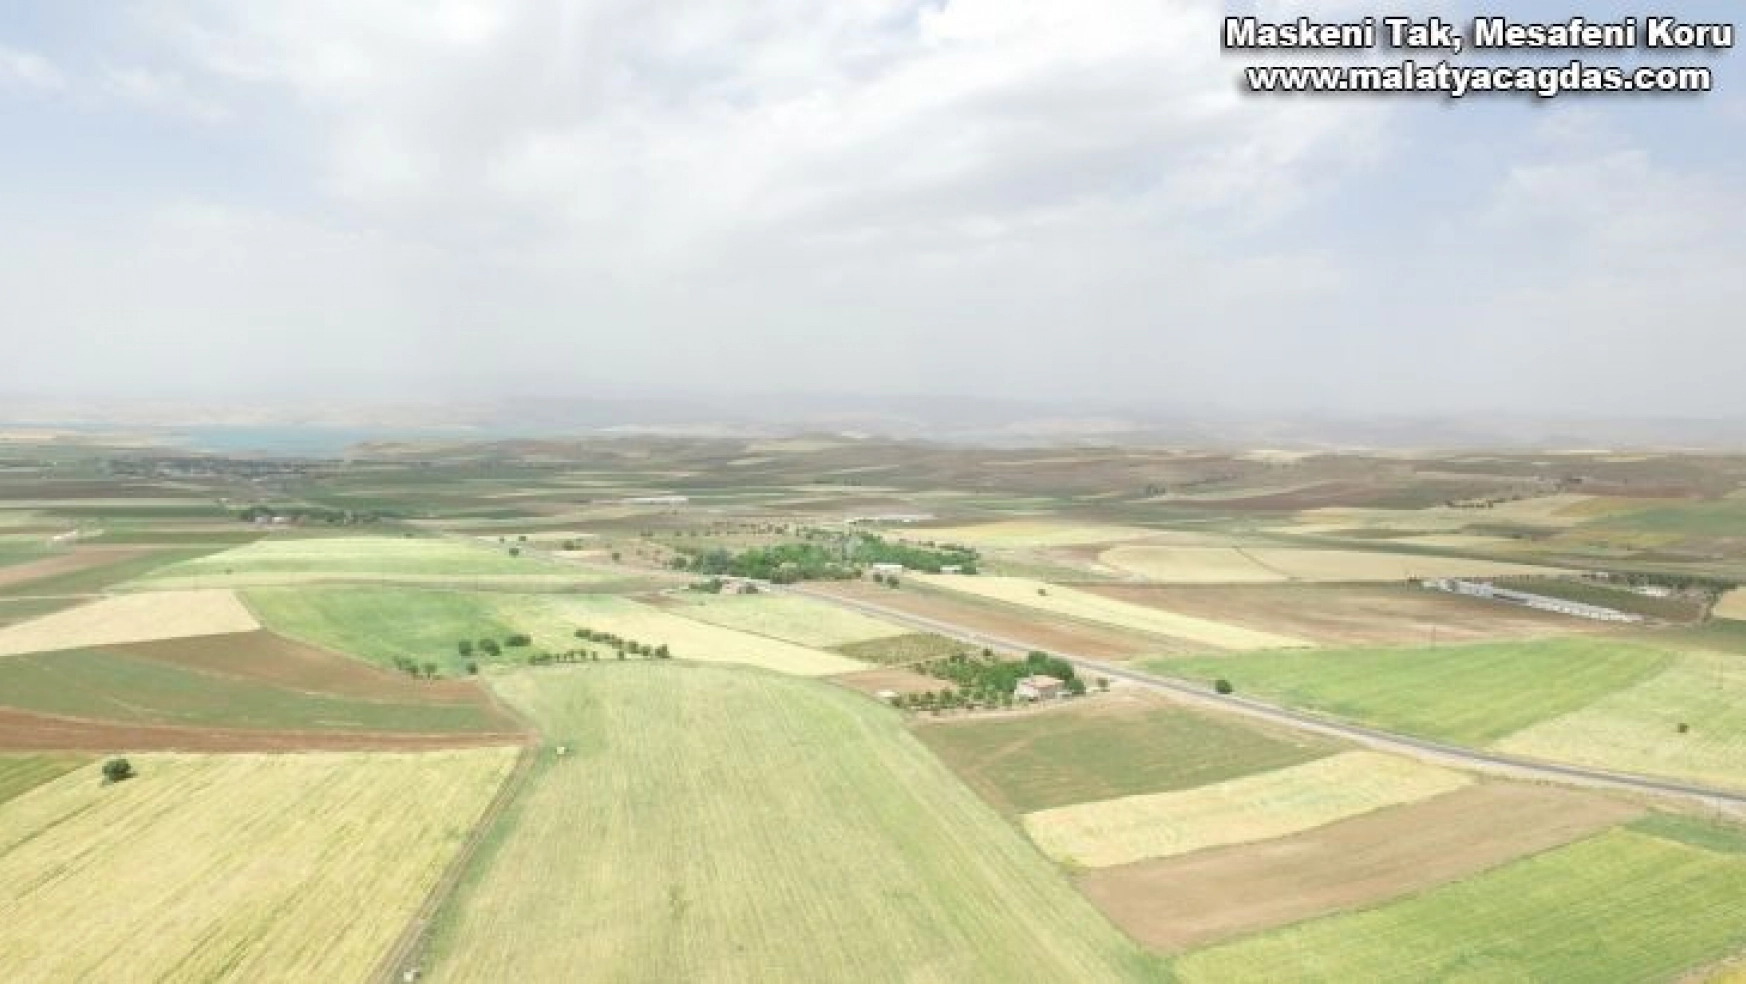 DSİ Genel Müdürü Yıldız,' 'Elazığ'da 185 bin 900 dekar tarım arazisi sulanacak'